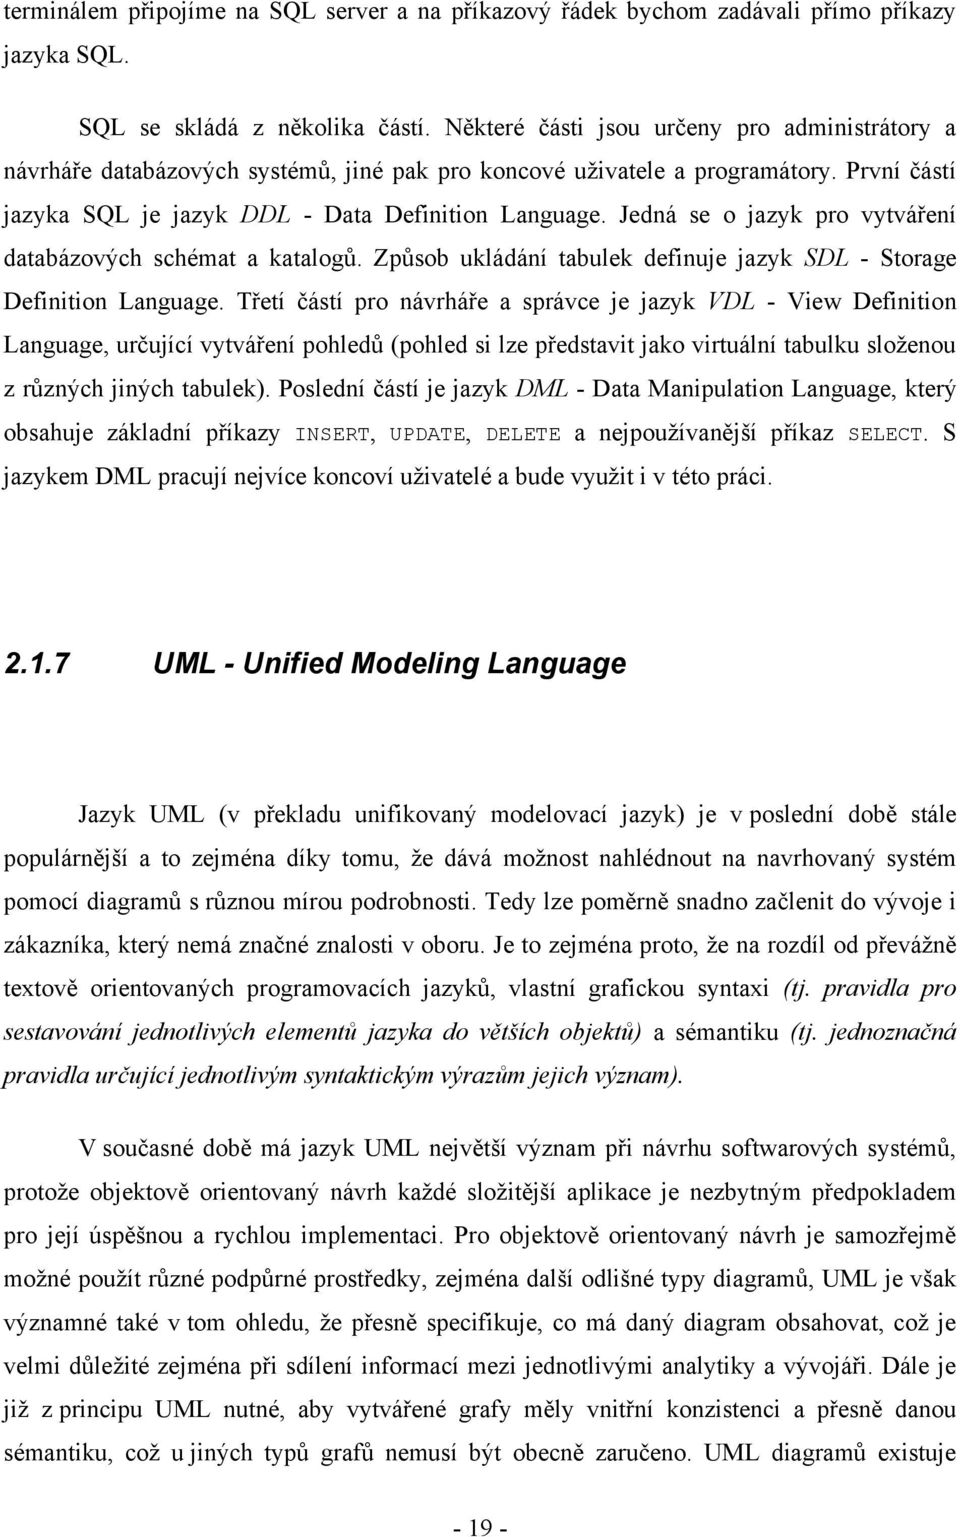 Jedná se o jazyk pro vytváření databázových schémat a katalogů. Způsob ukládání tabulek definuje jazyk SDL - Storage Definition Language.